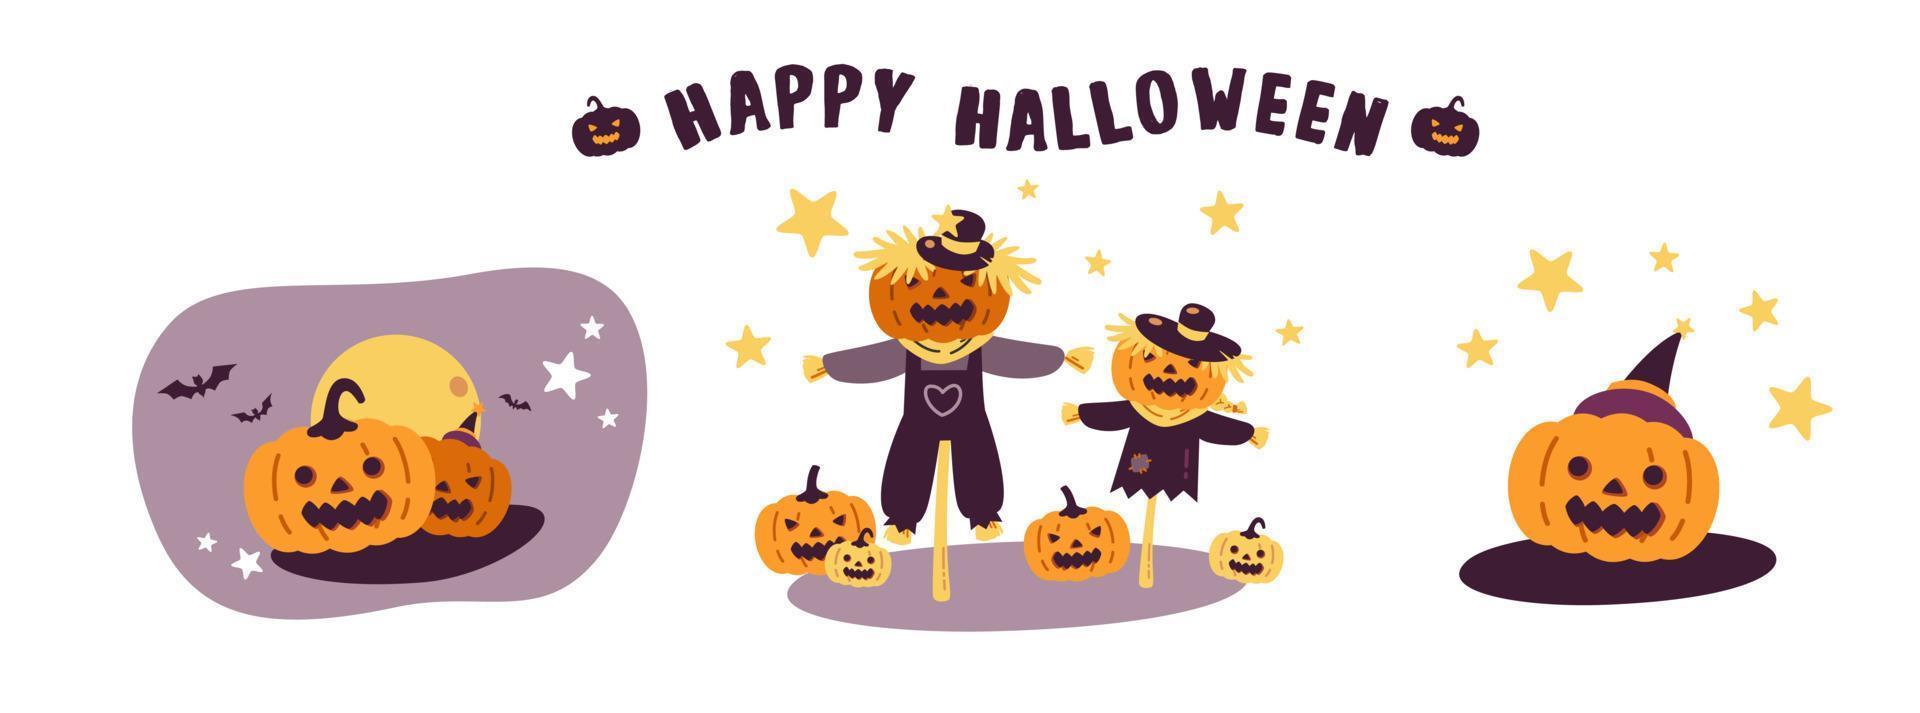 feliz halloween personaje de dibujos animados espeluznante y lindo concepto plano vector ilustración aislado sobre fondo blanco. lindas calabazas, espantapájaros, calabaza con sombrero de bruja.